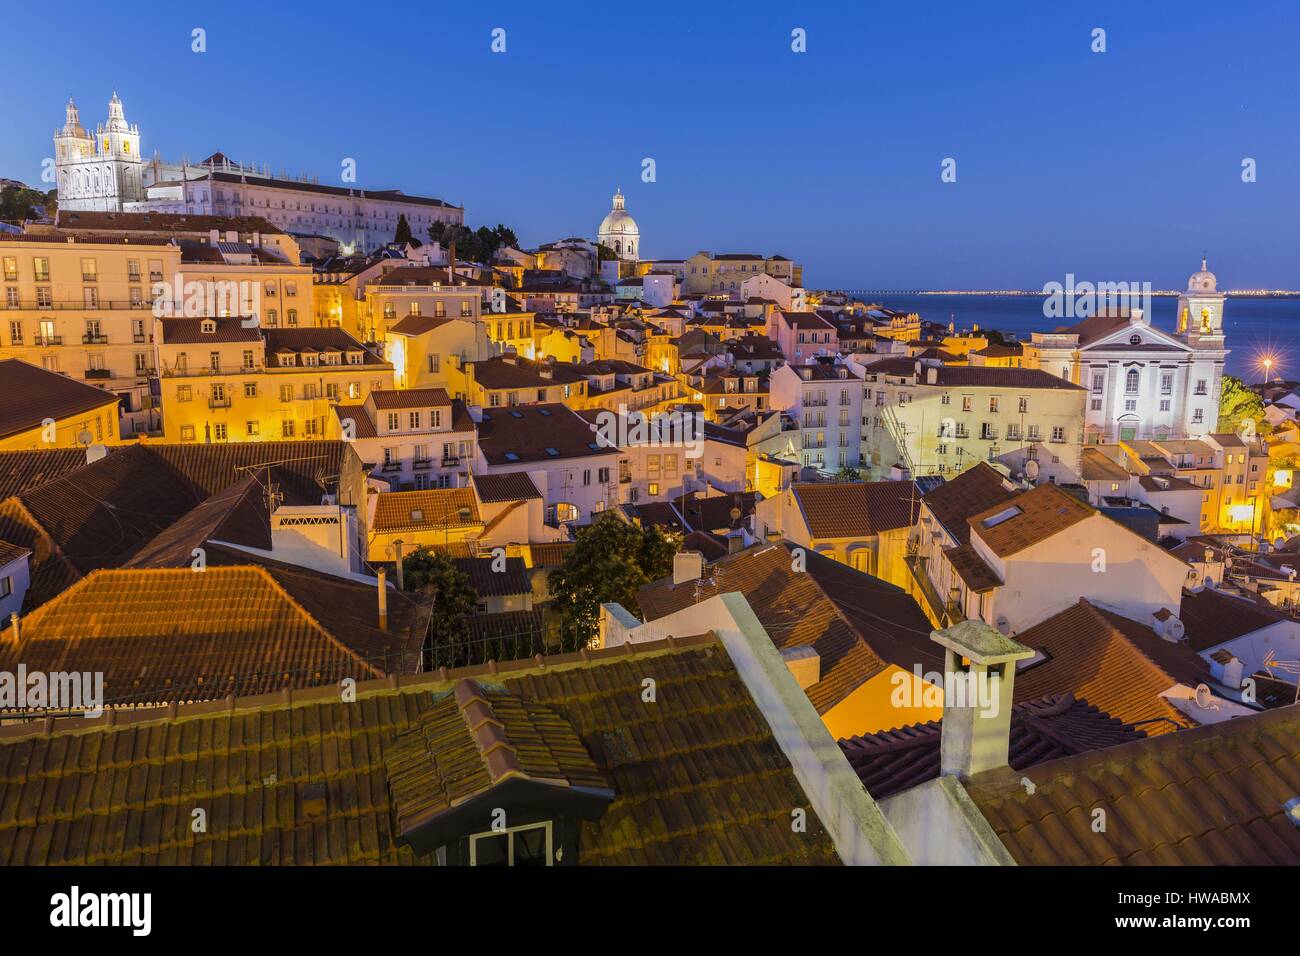 Portugal, Lisbonne, district d'Alfama, le monastère de Sao Vicente, l'église Santo Estevao et du dôme du panthéon national du Portugal Banque D'Images